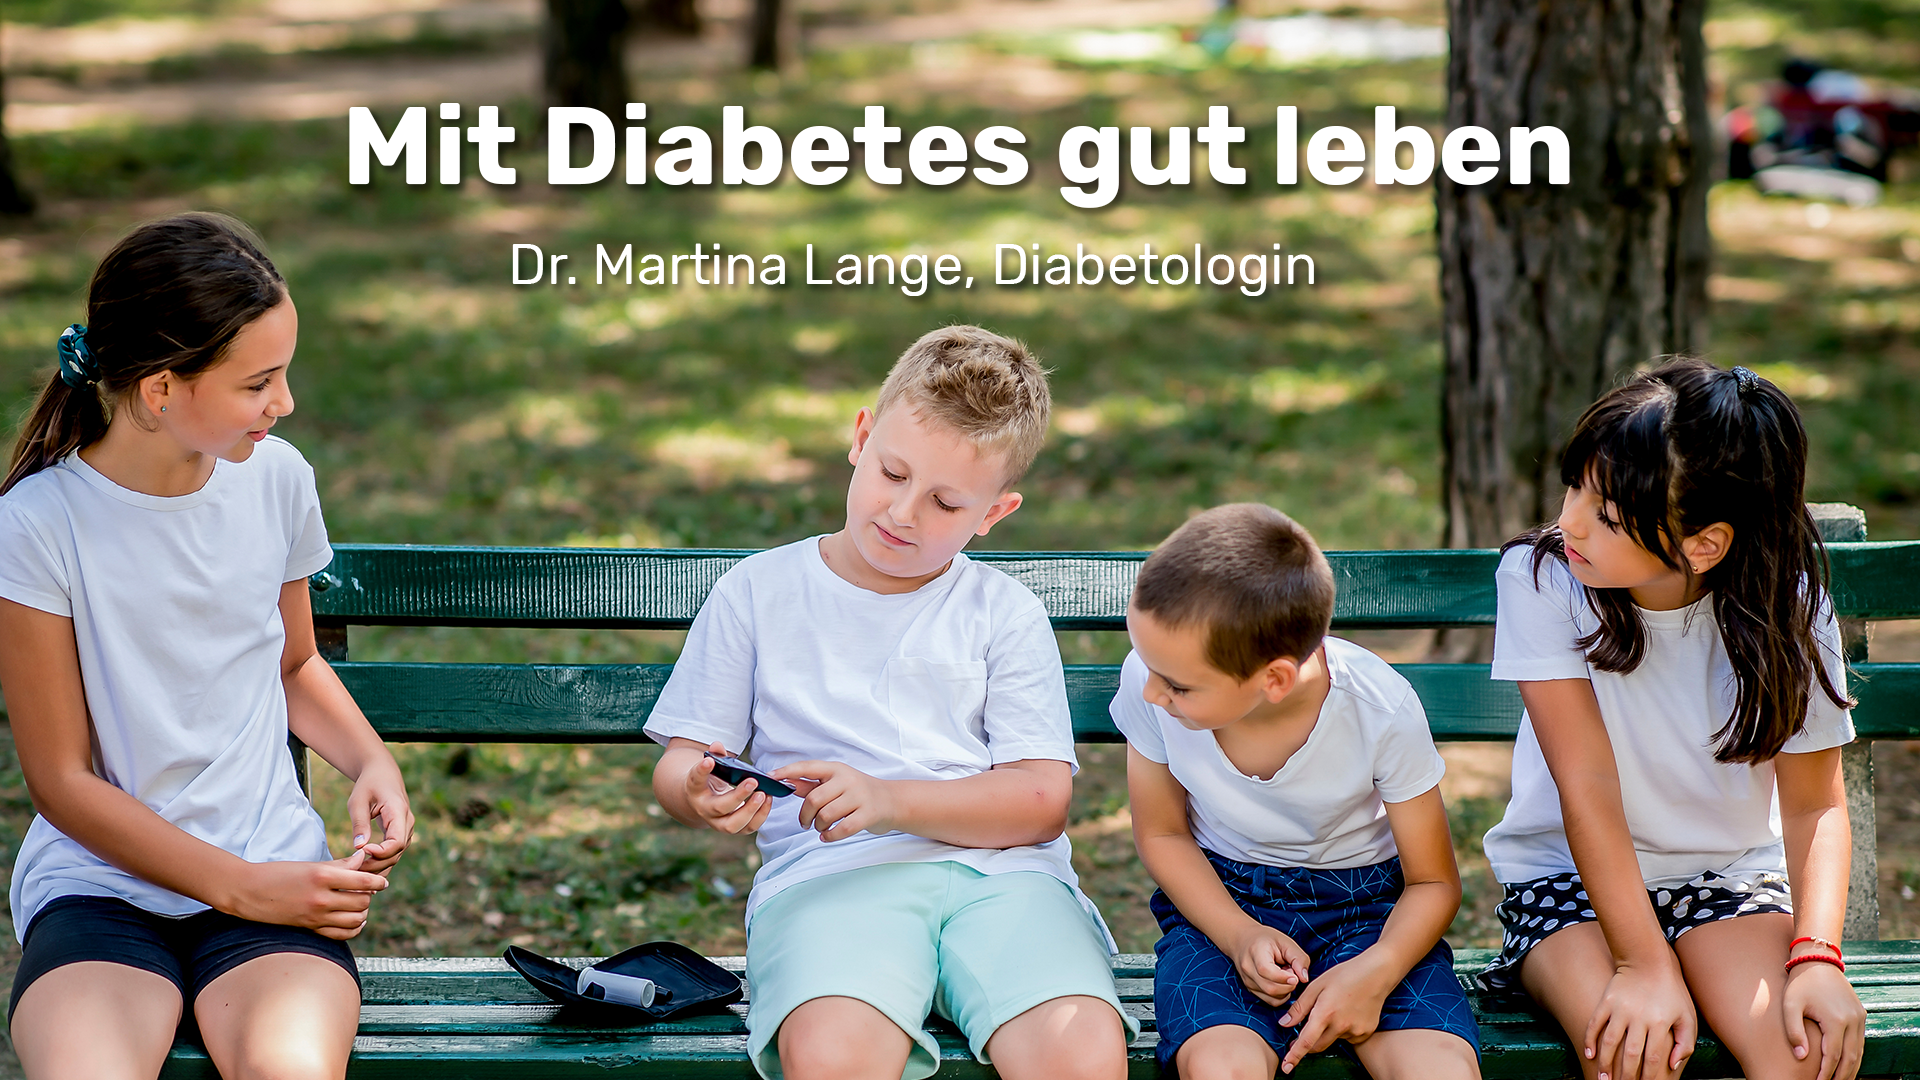 Diabetes und gutes Leben